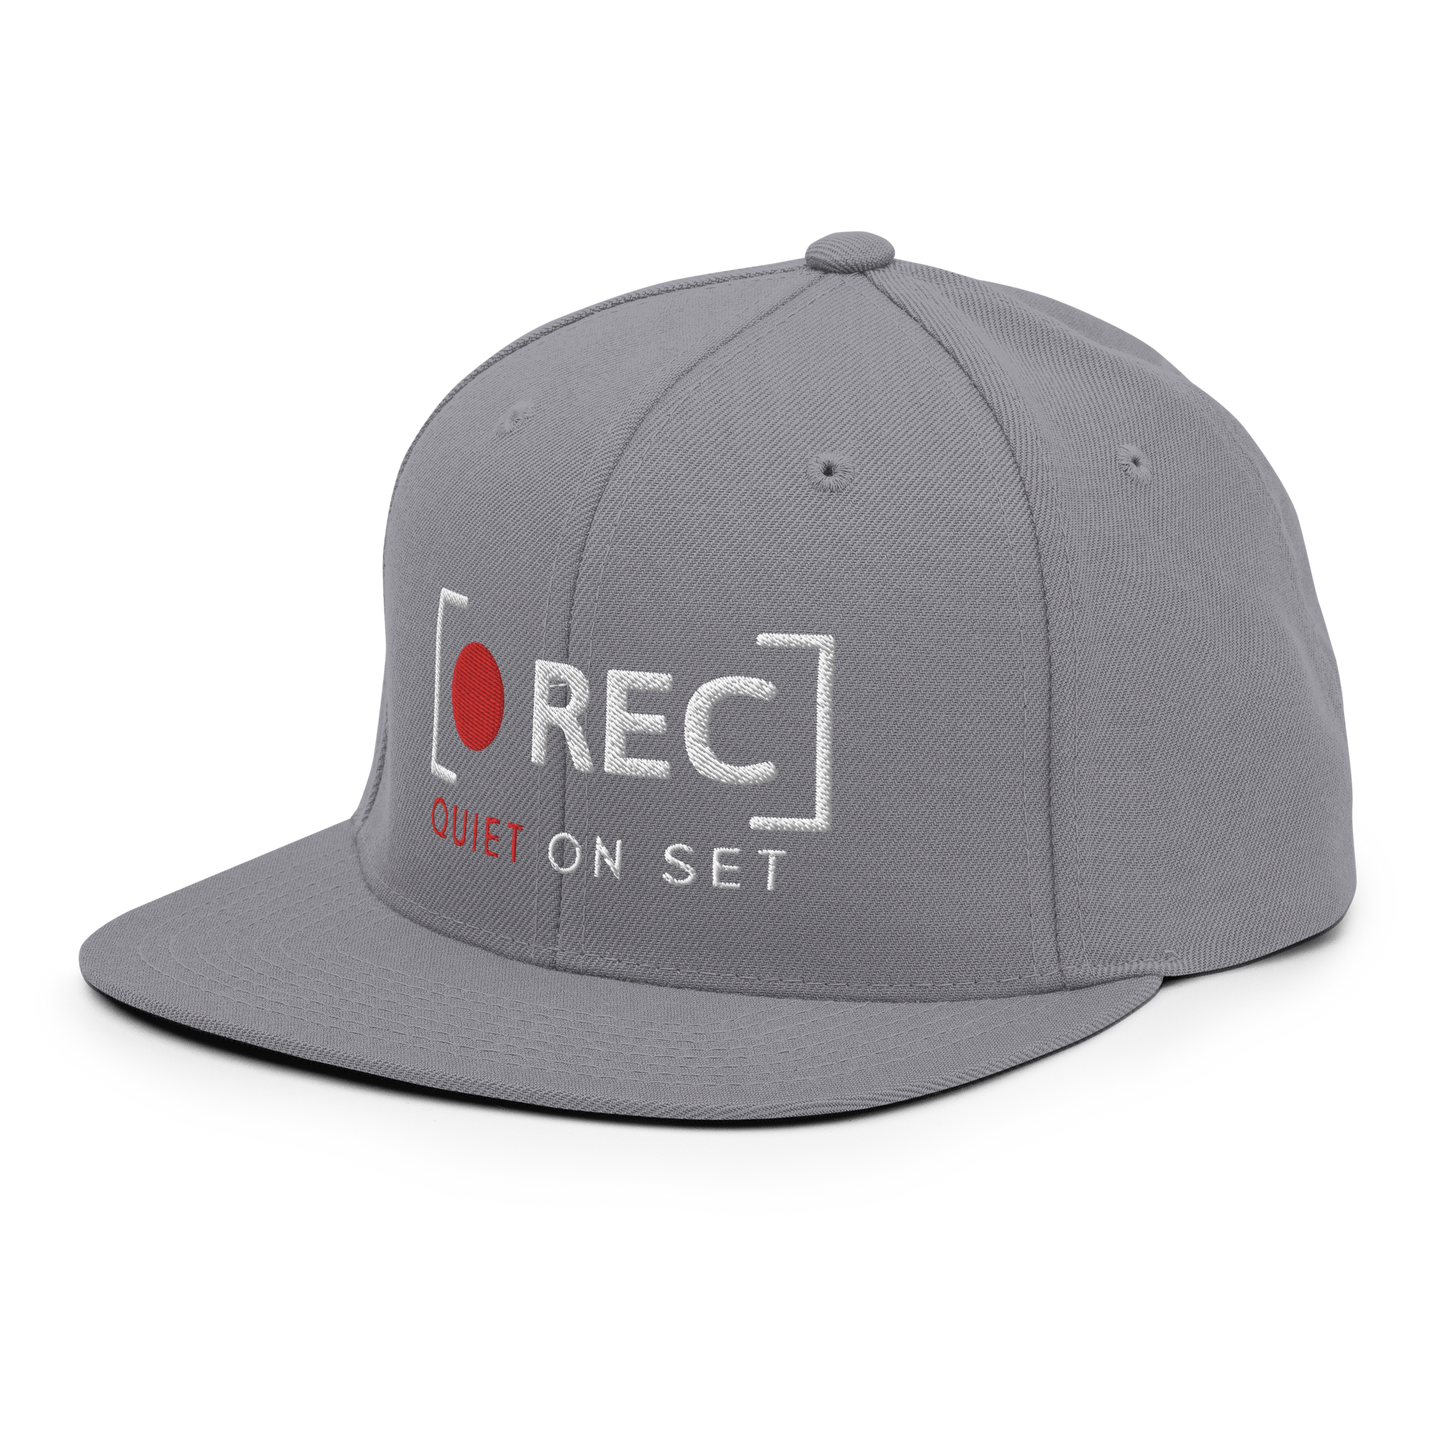 REC - Quiet On Set Snapback Hat (Variant A)